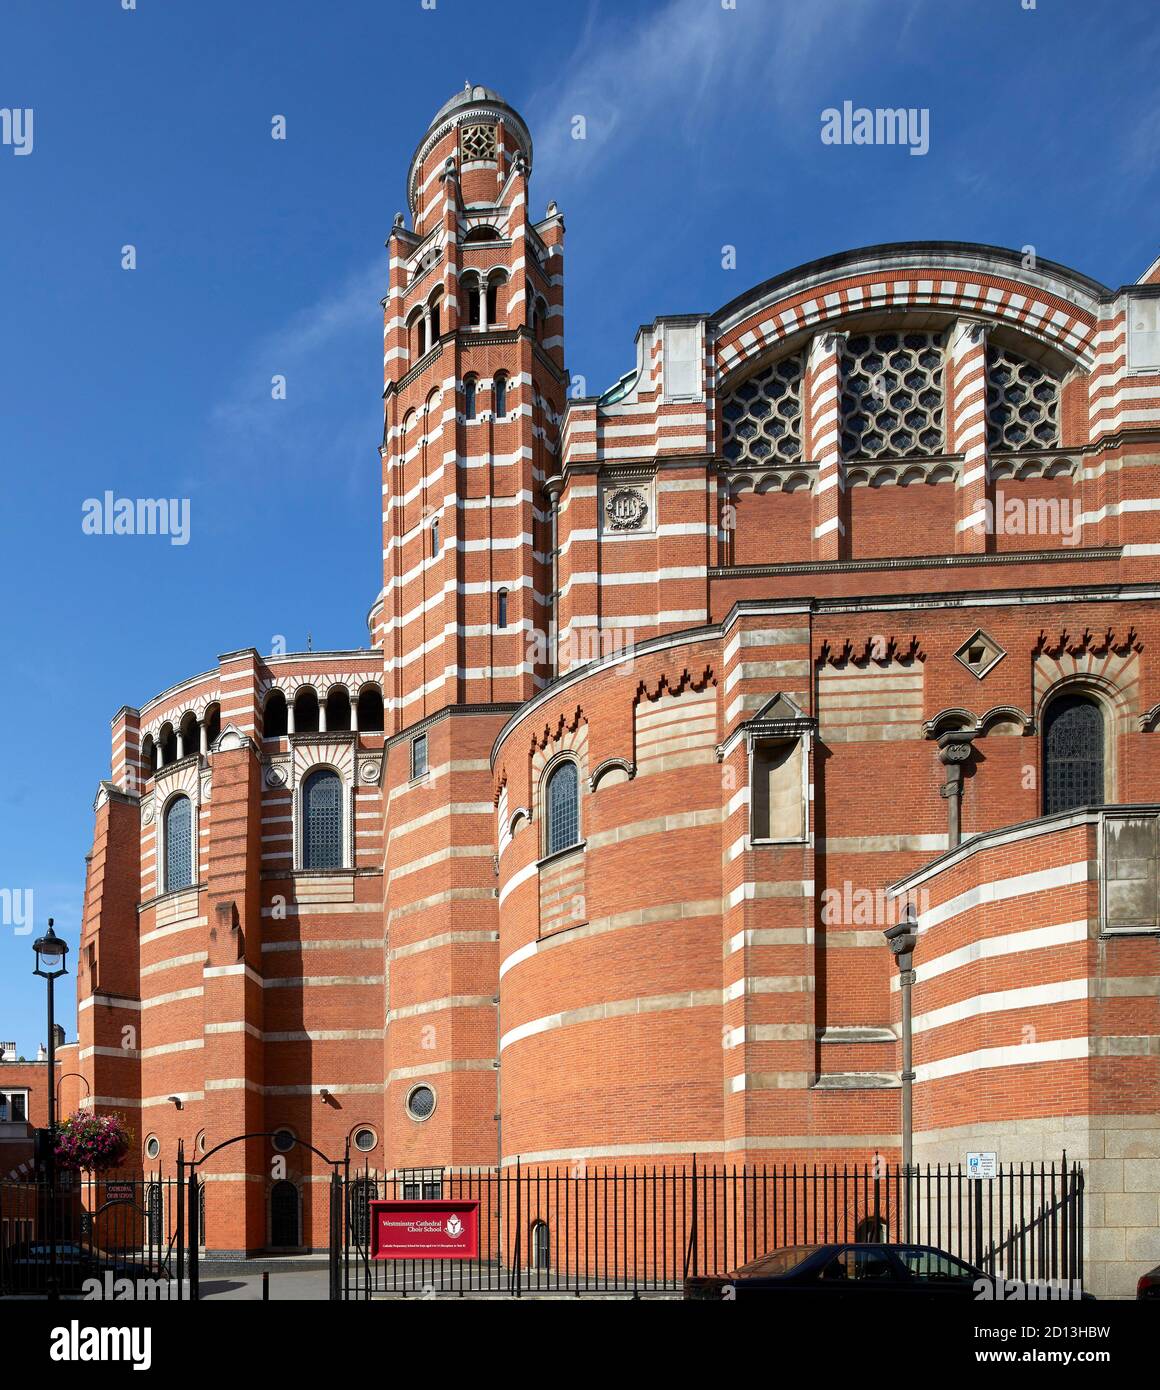 Cathédrale de Westminster (1903) John Francis Bentley. Paysage urbain, rues et façades de Londres, Londres, Royaume-Uni. Architecte : divers, 2020. Banque D'Images